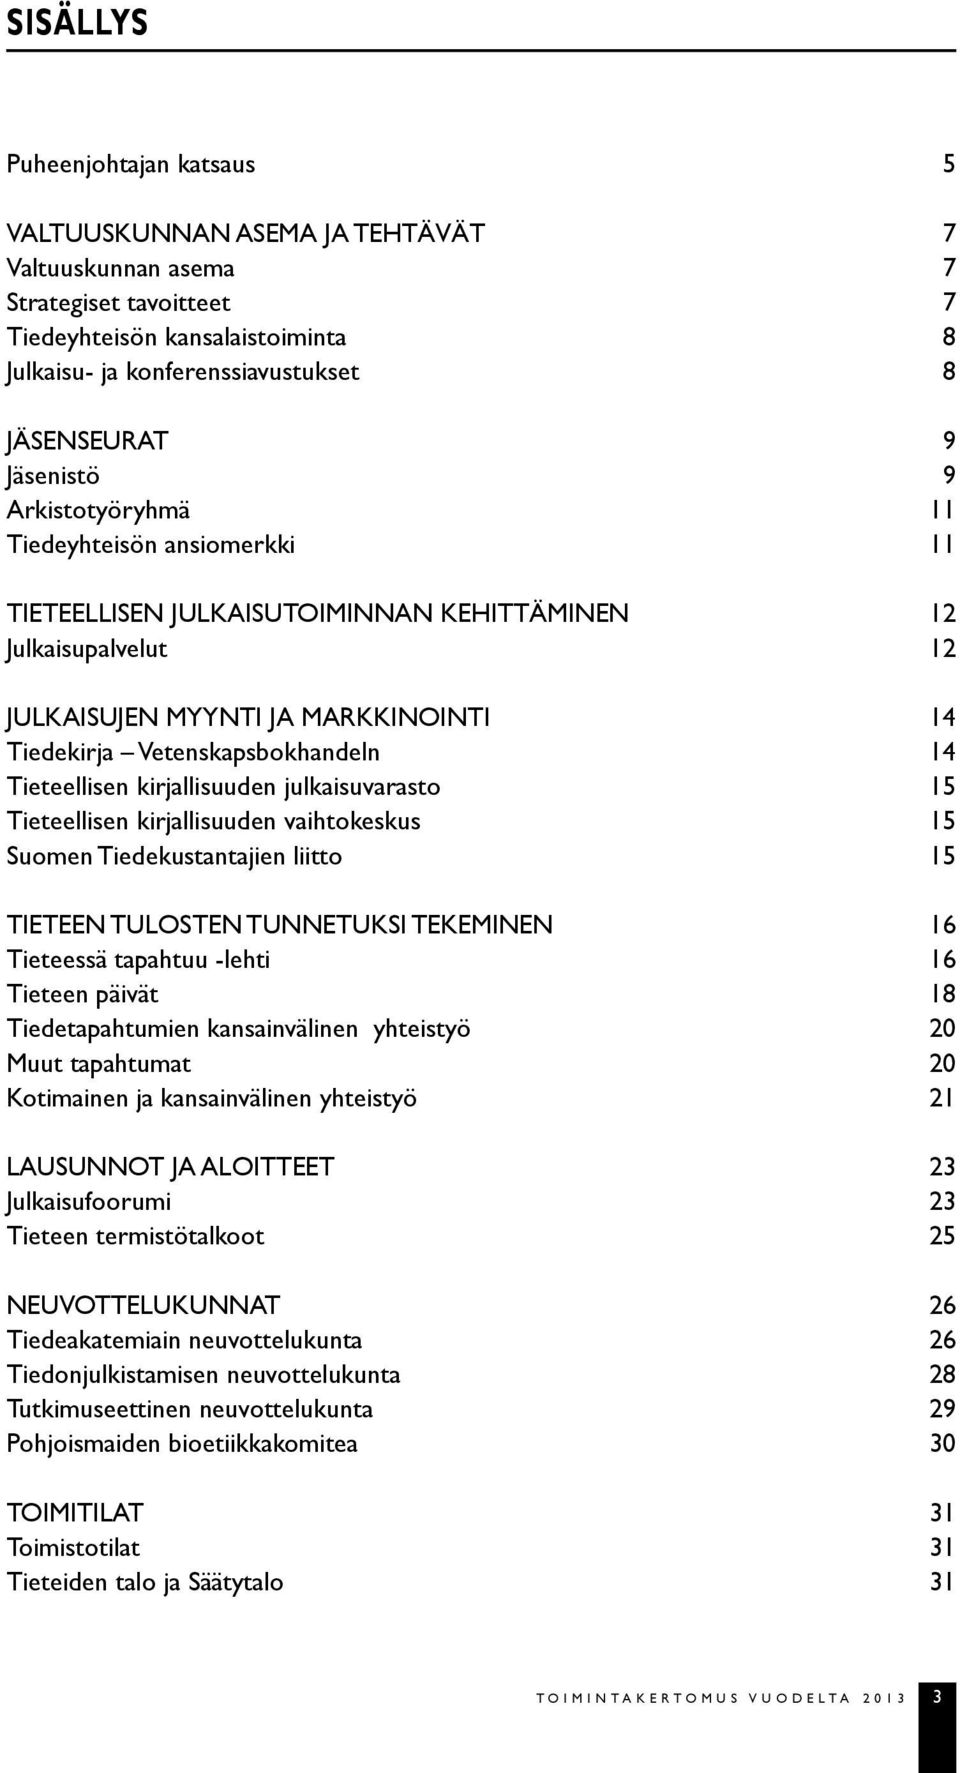 Tieteellisen kirjallisuuden julkaisuvarasto 15 Tieteellisen kirjallisuuden vaihtokeskus 15 Suomen Tiedekustantajien liitto 15 TIETEEN TULOSTEN TUNNETUKSI TEKEMINEN 16 Tieteessä tapahtuu -lehti 16